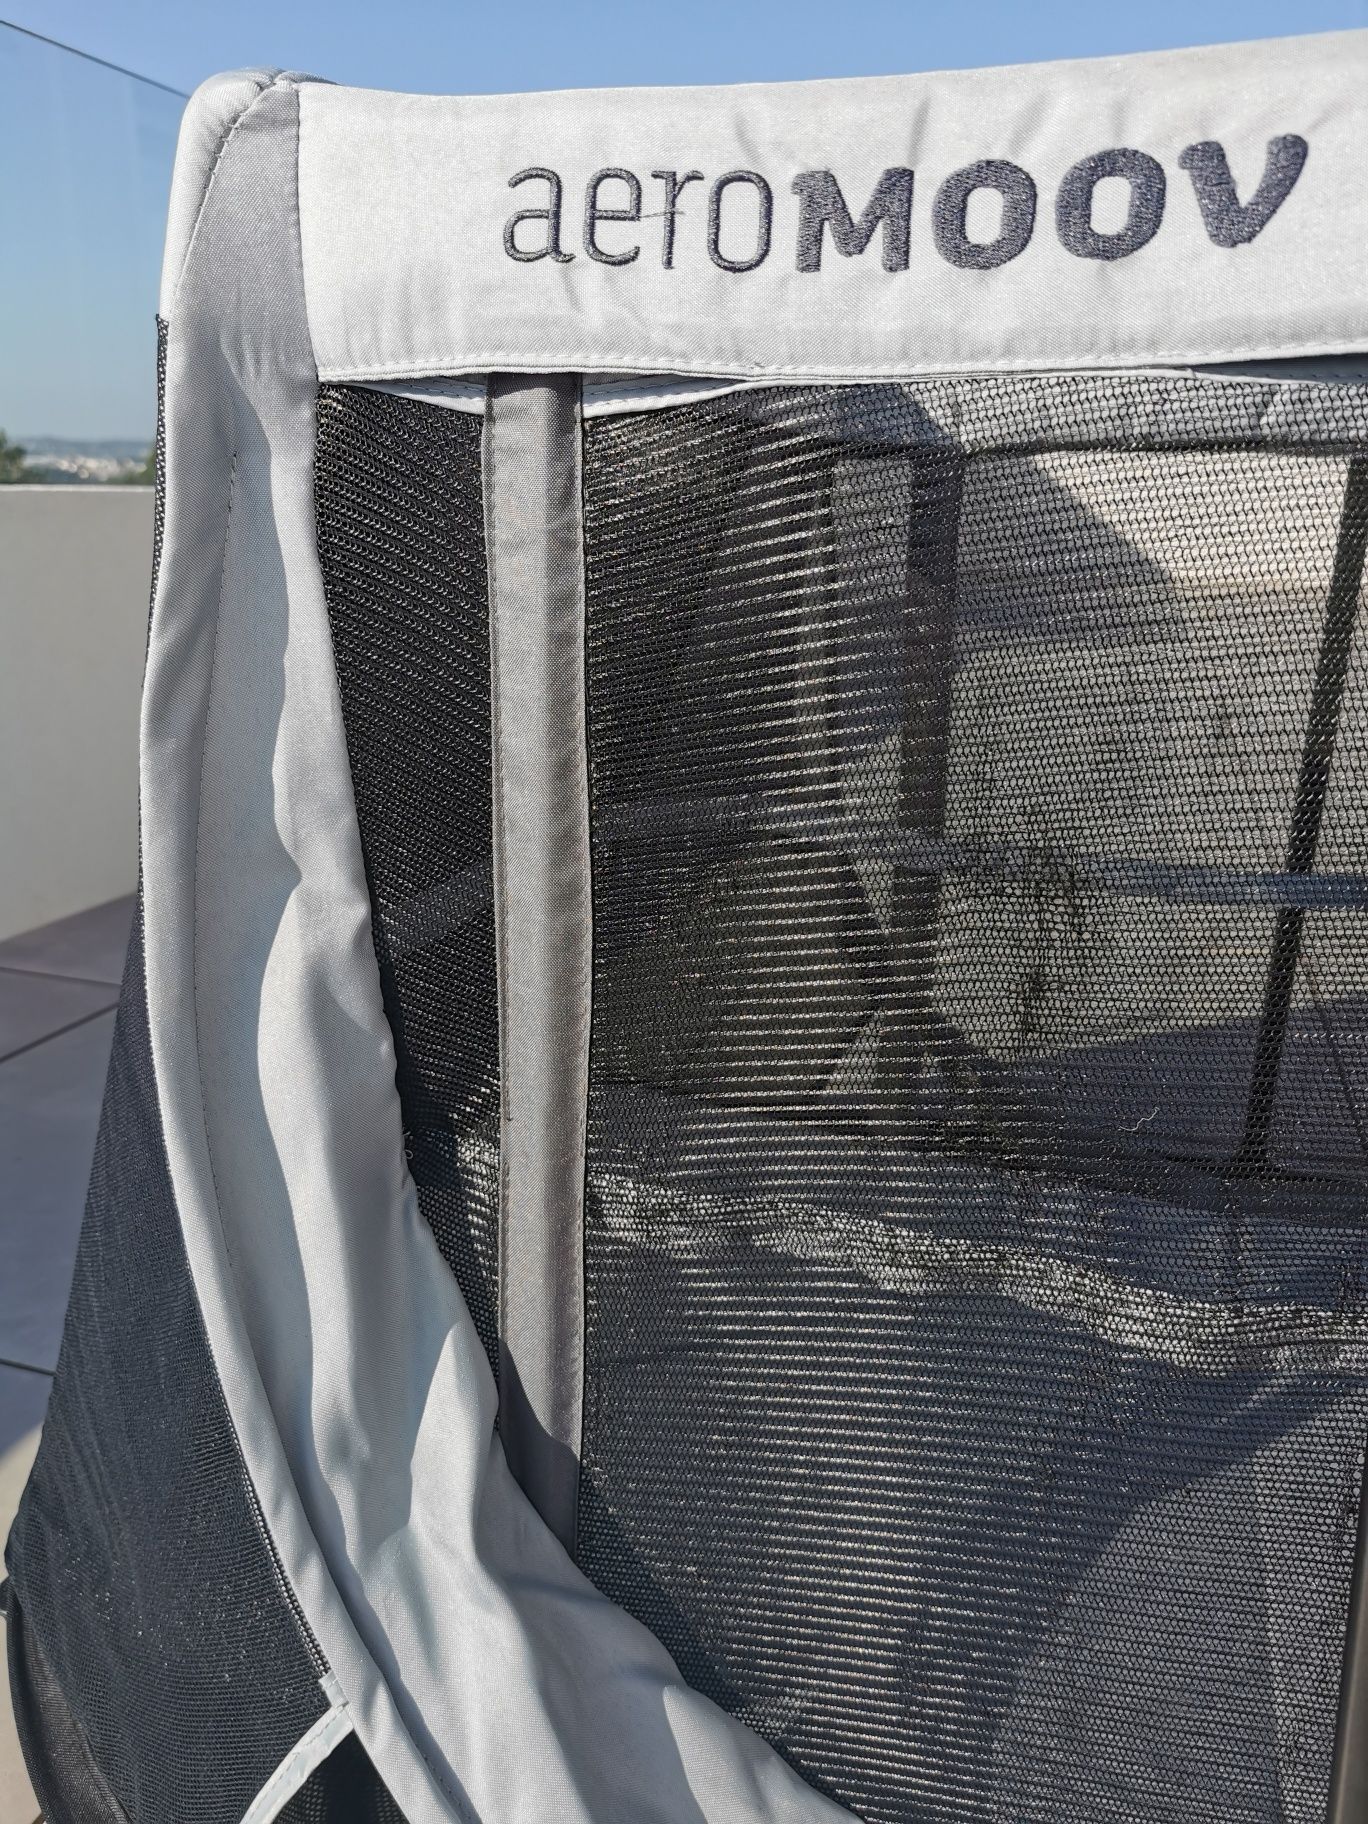 Aeromoov berço/ cama de viagem